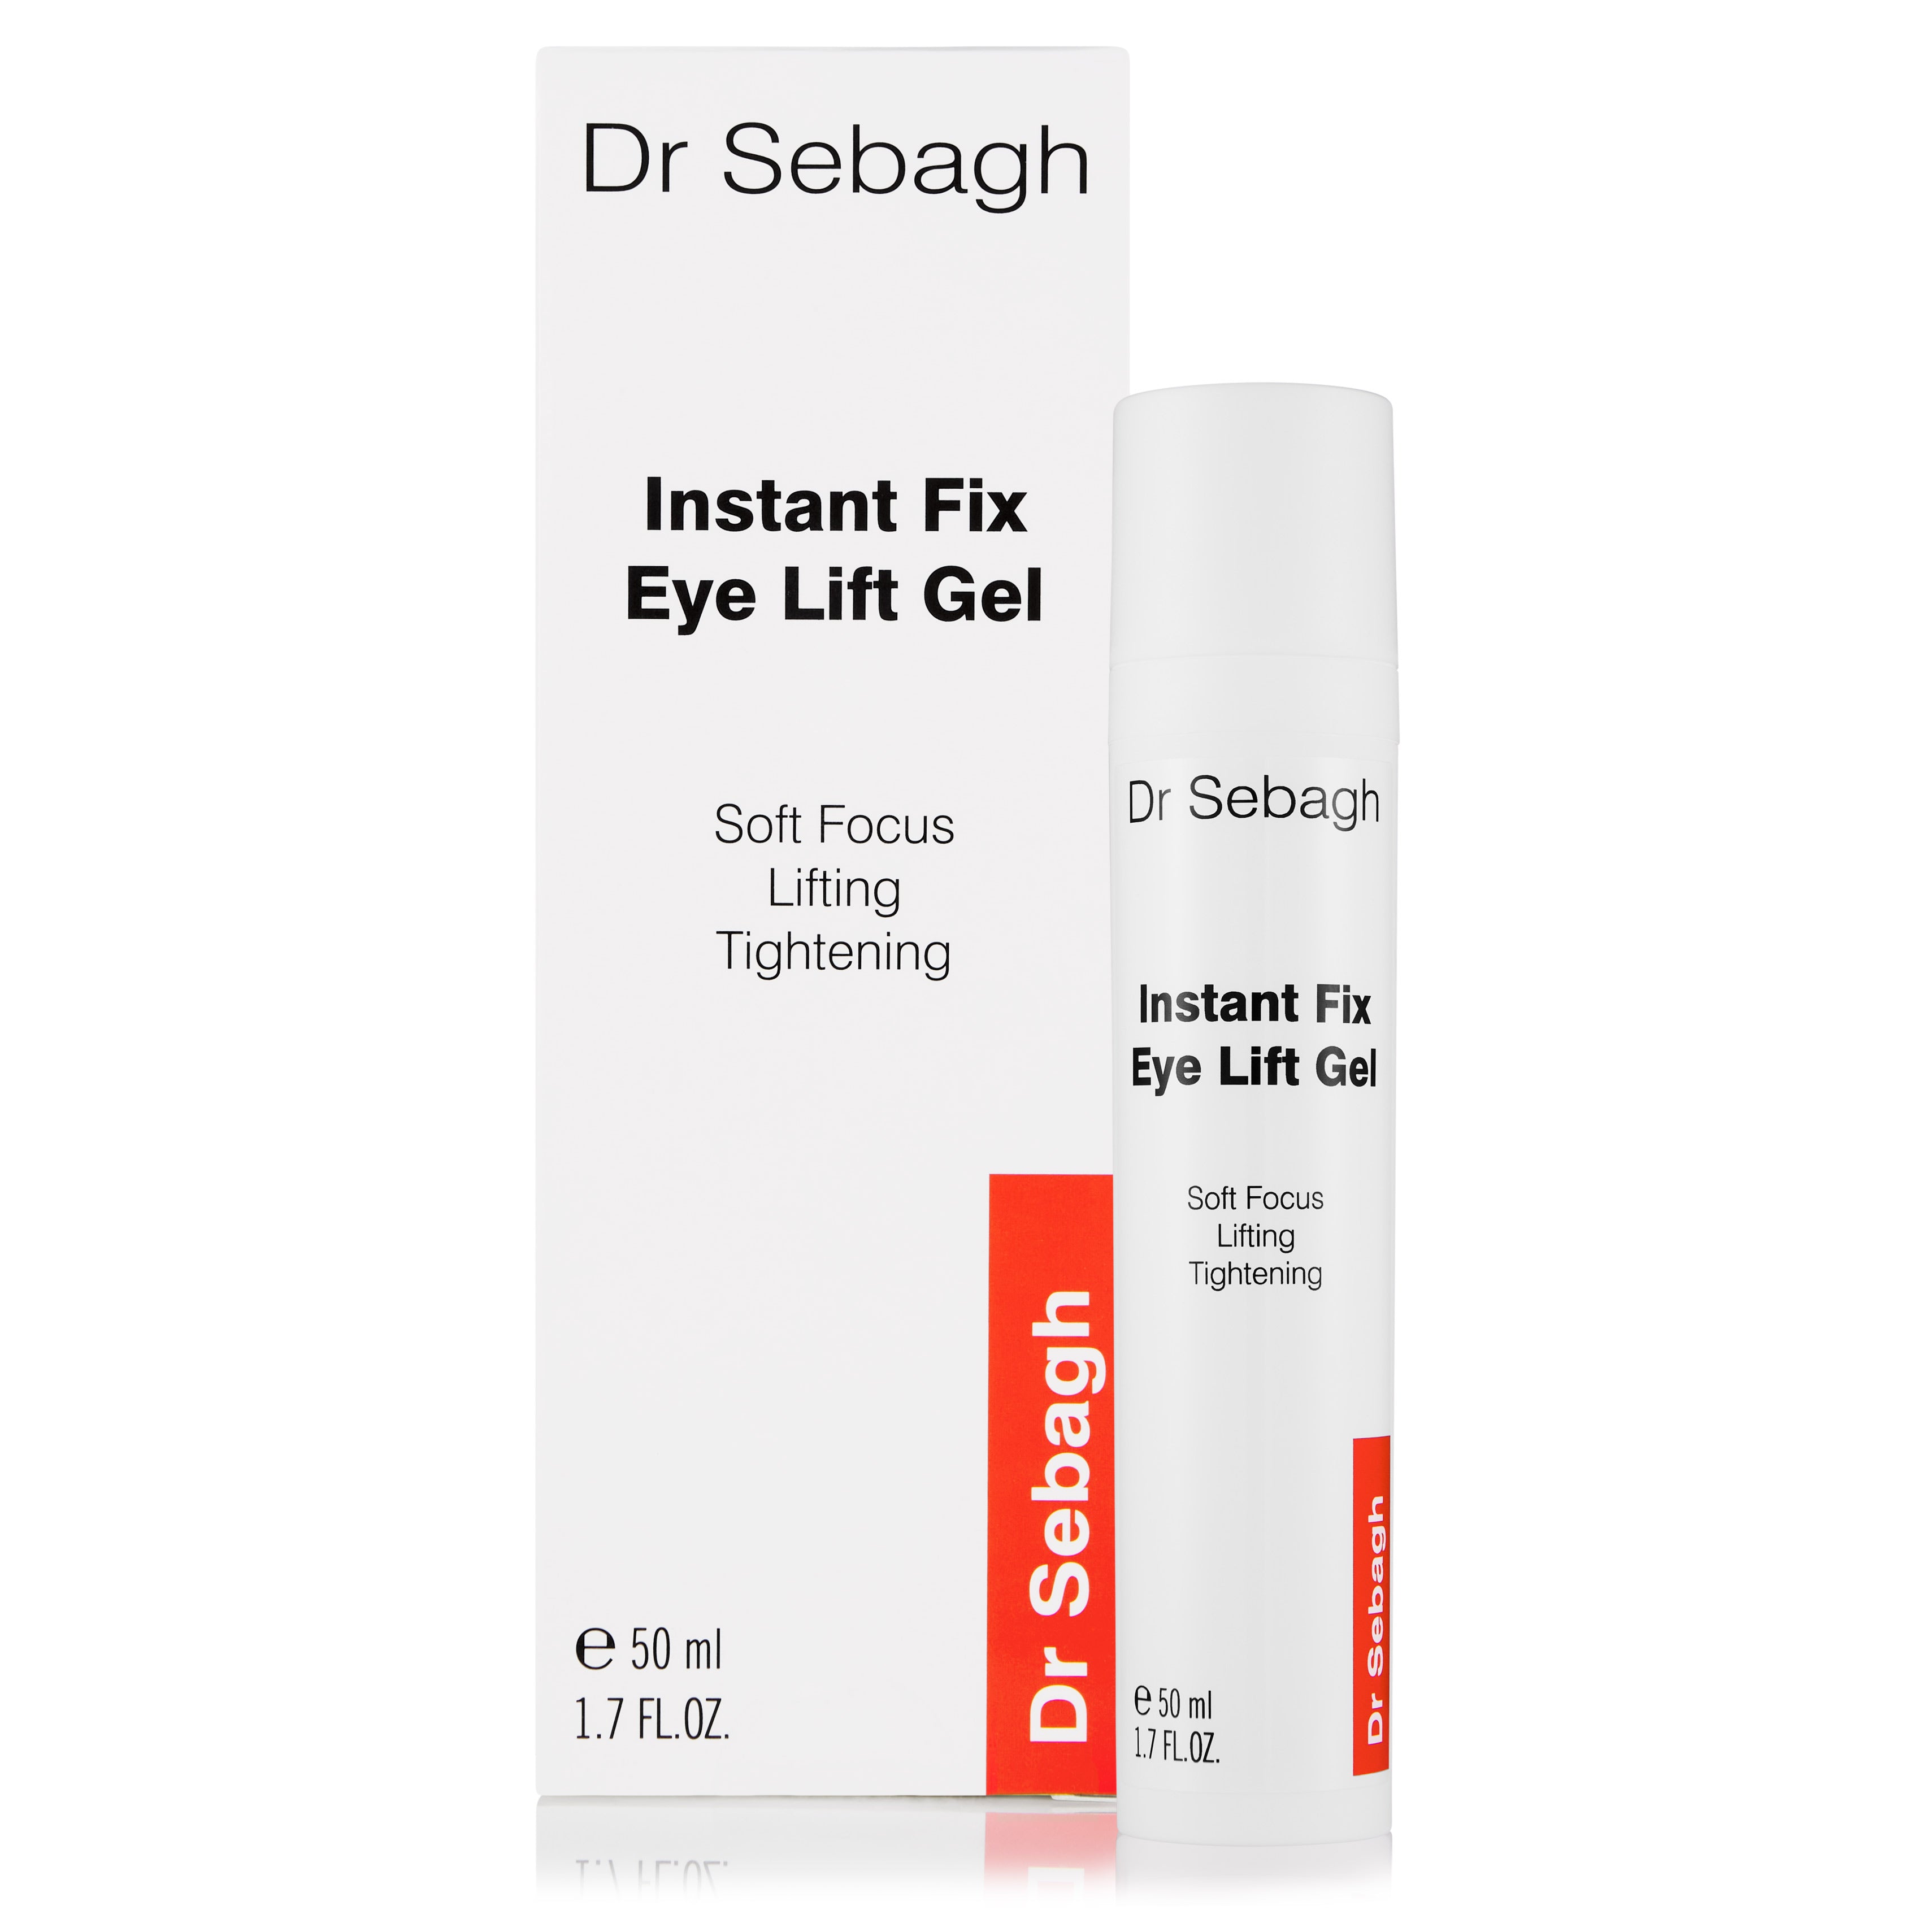 Instant Fix Eye Lift Gel, Dr Sebagh Skin Care